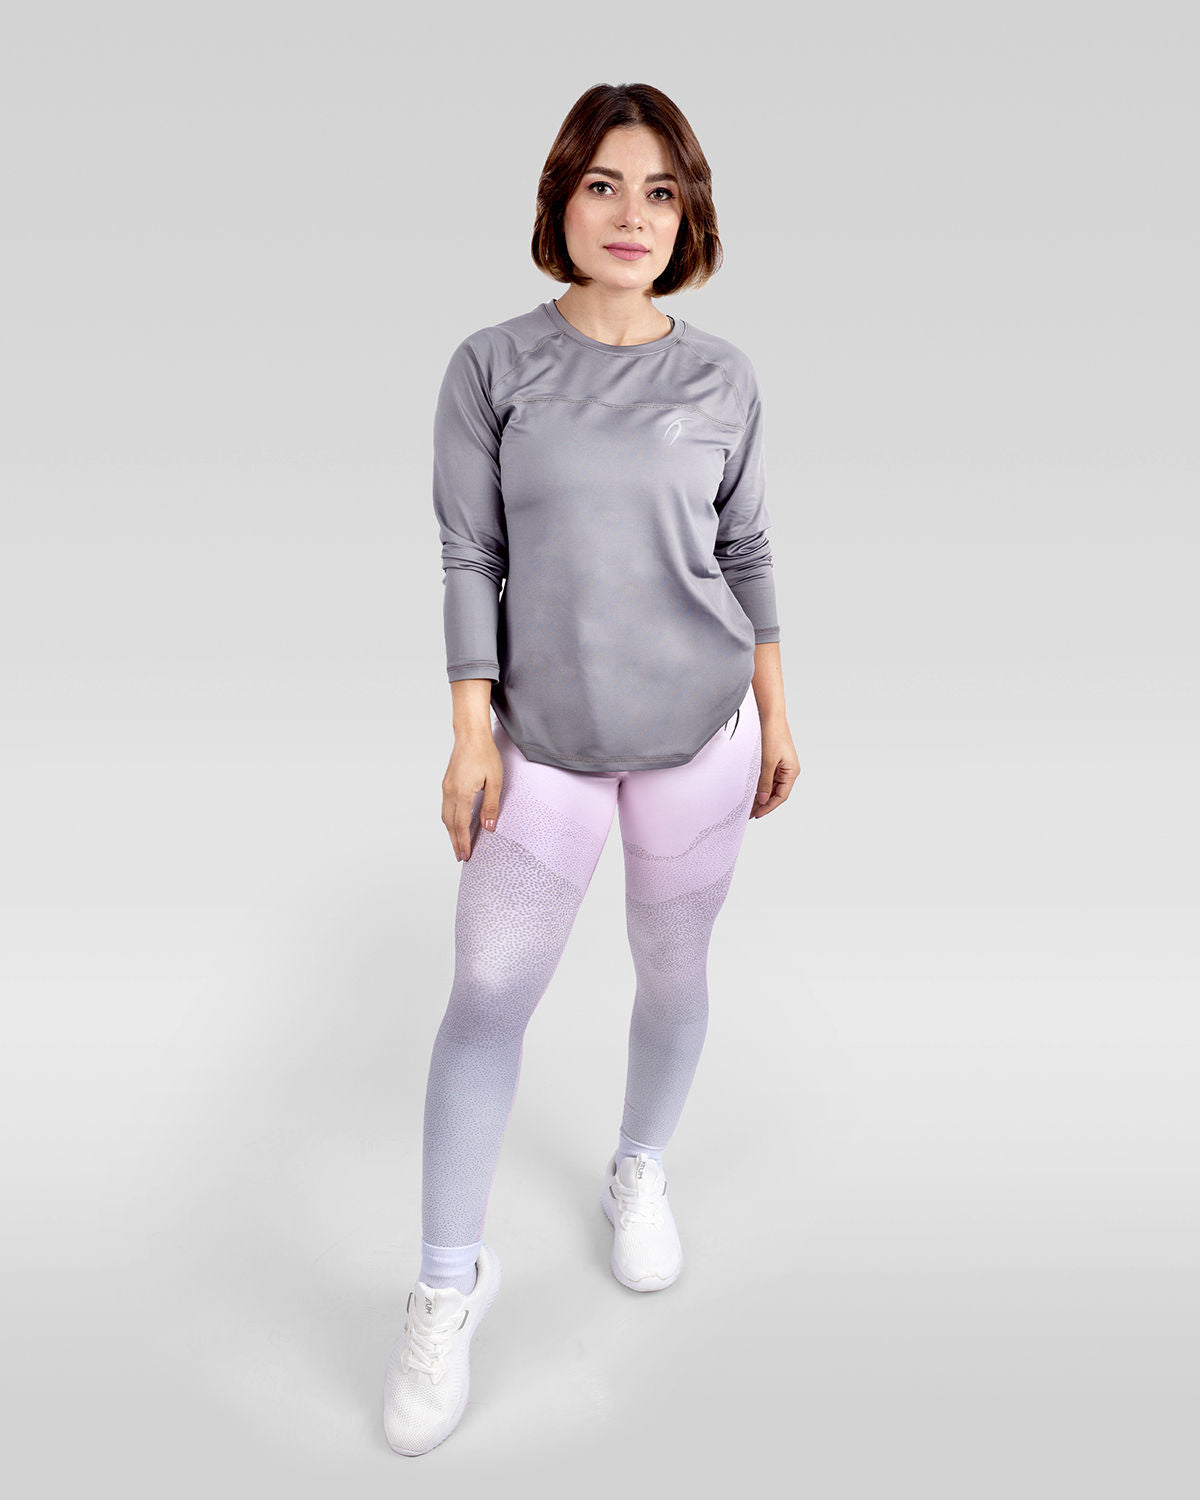 Atum women's gradient leggings